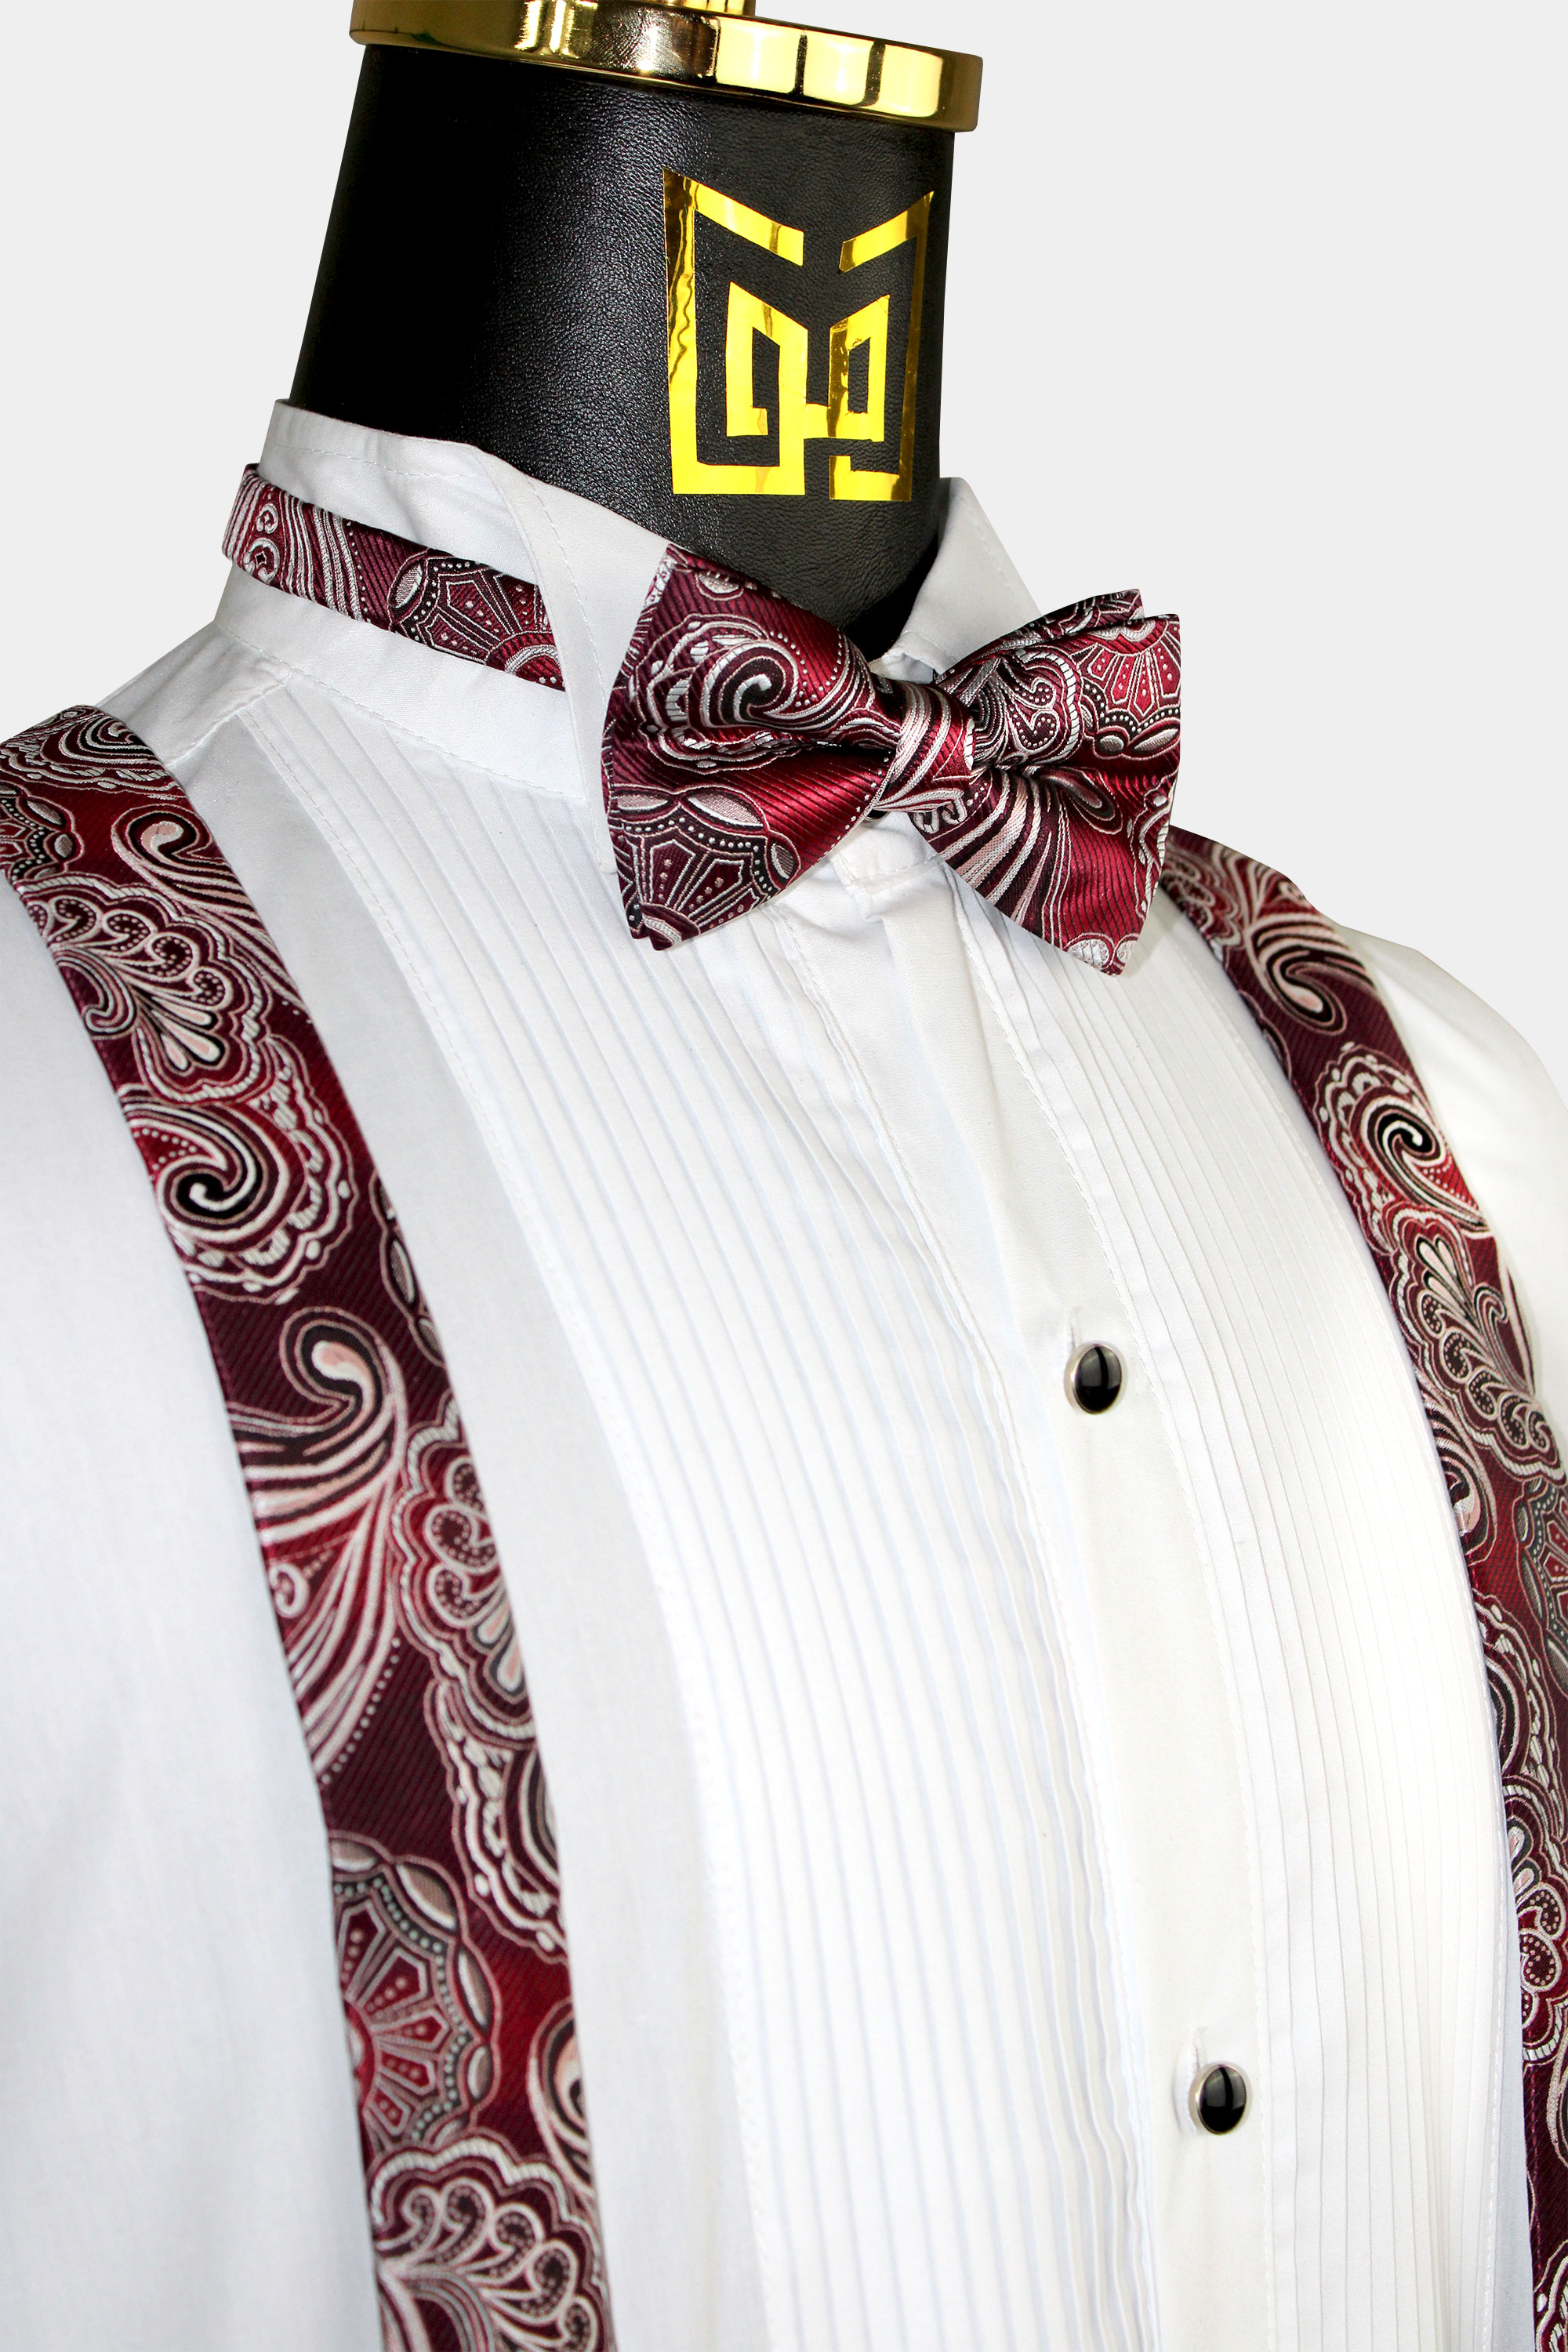 Maroon-Paisley-Suspenders-and-Bow-Tie-Set-Grommsmen-Wedding-from-Gentlemansguru.com